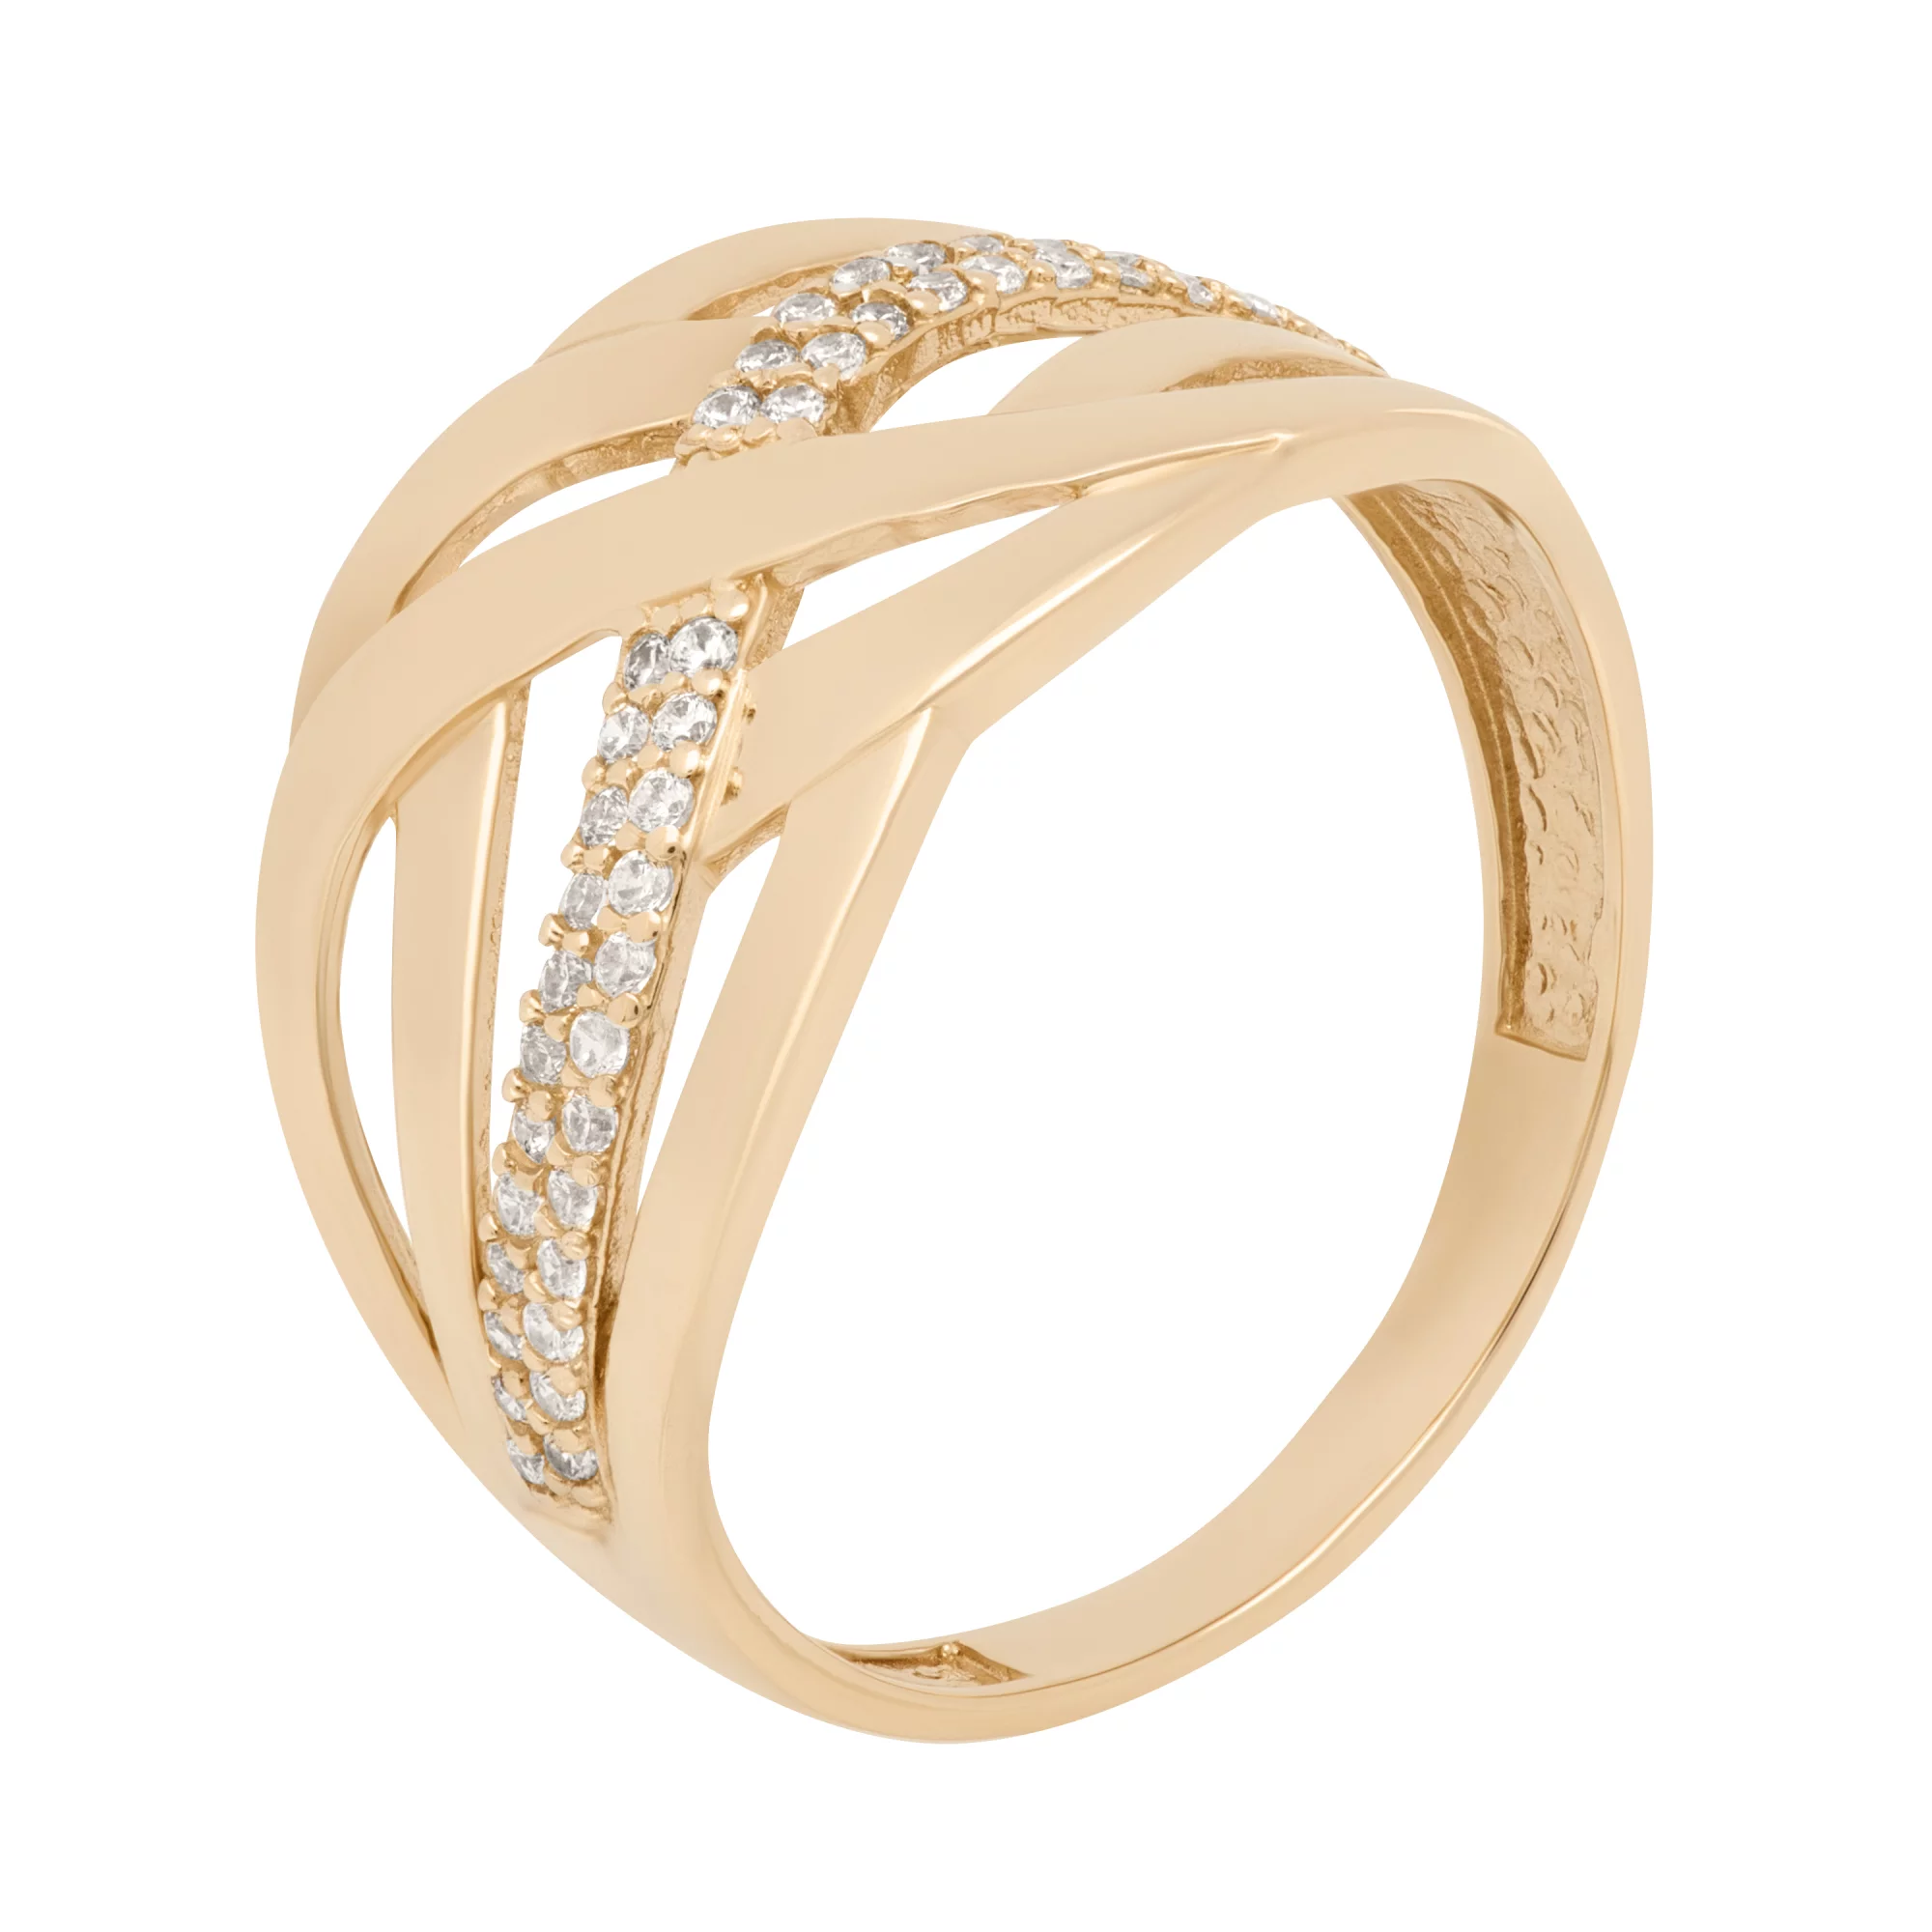 Широкое золотое кольцо с фианитами "Переплетение" - 1640055 – изображение 1